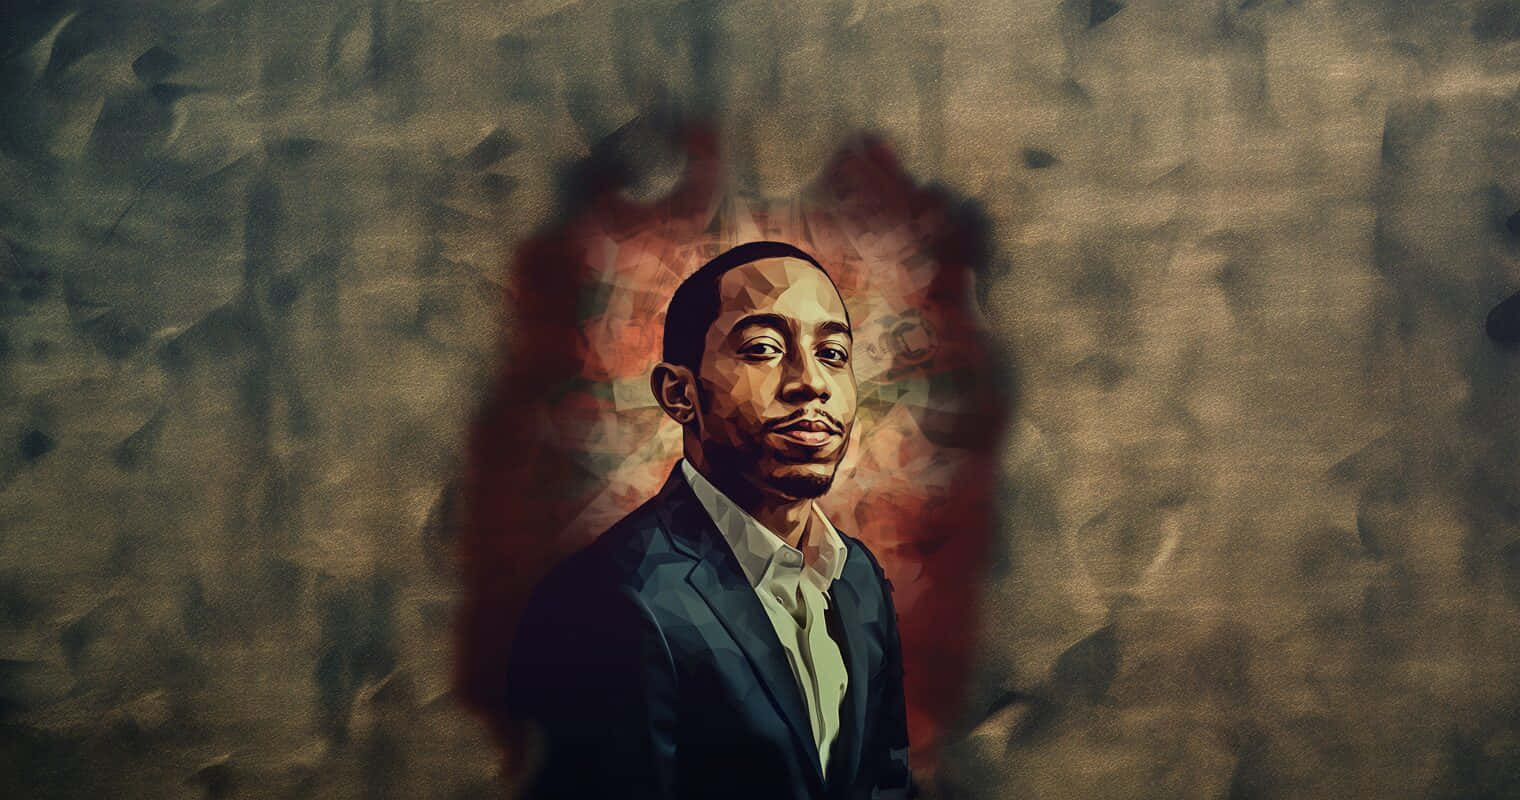 Ludacris Artistic Portrait Wallpaper